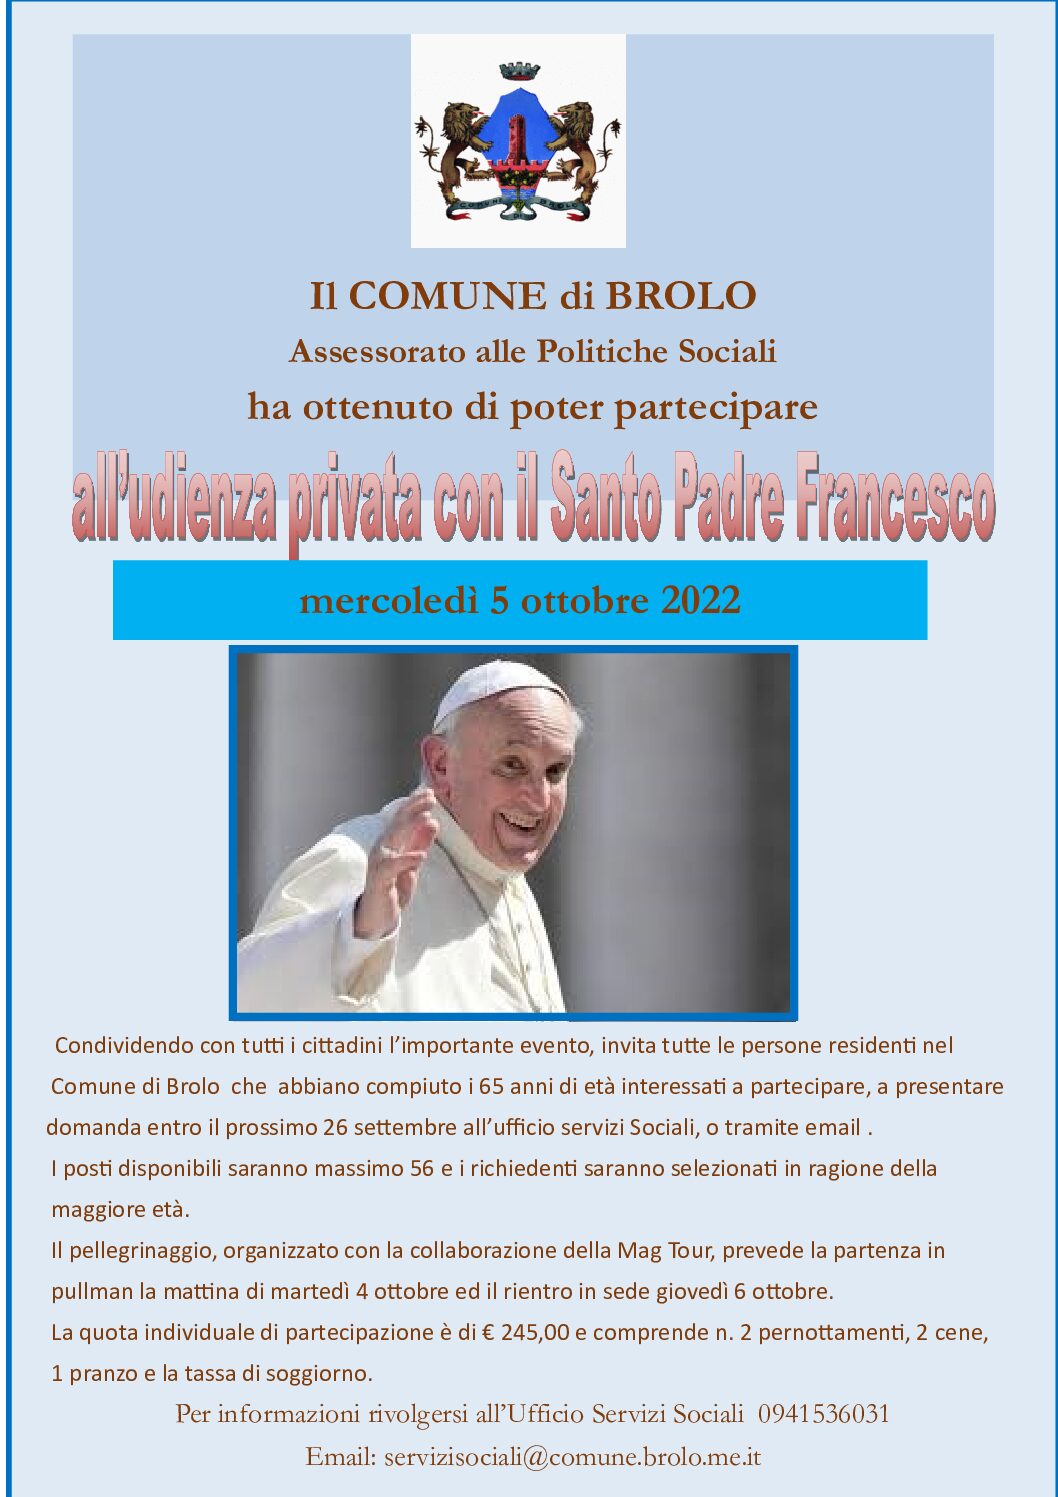 Avviso di richiesta partecipazione all’Udienza con il Santo Padre Francesco il 5 ottobre